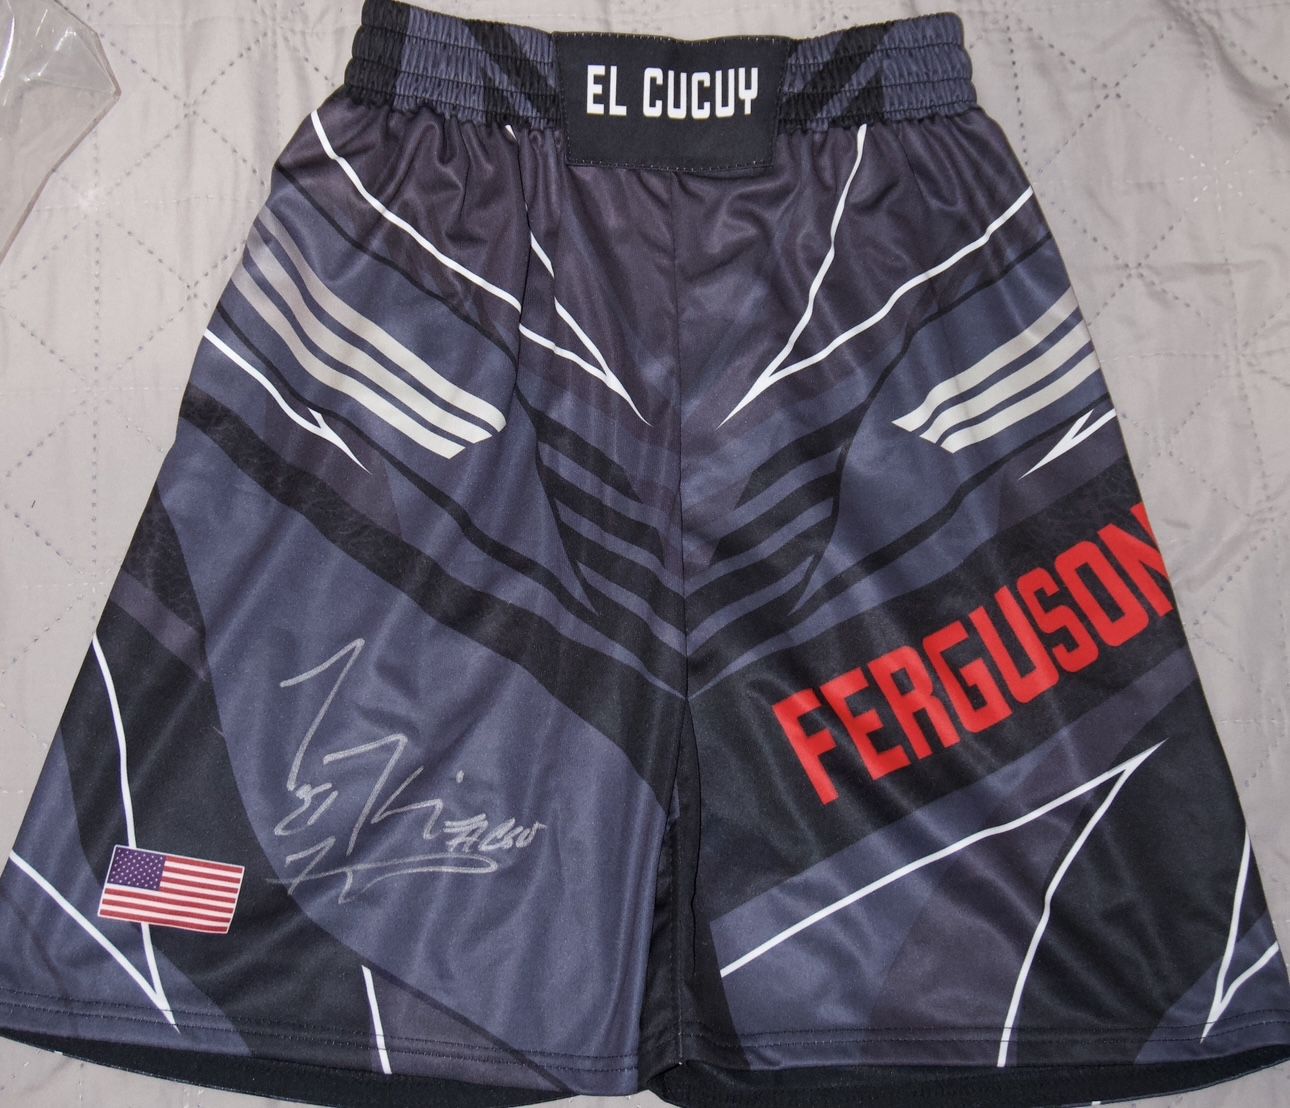 Signed Ferguson Shorts